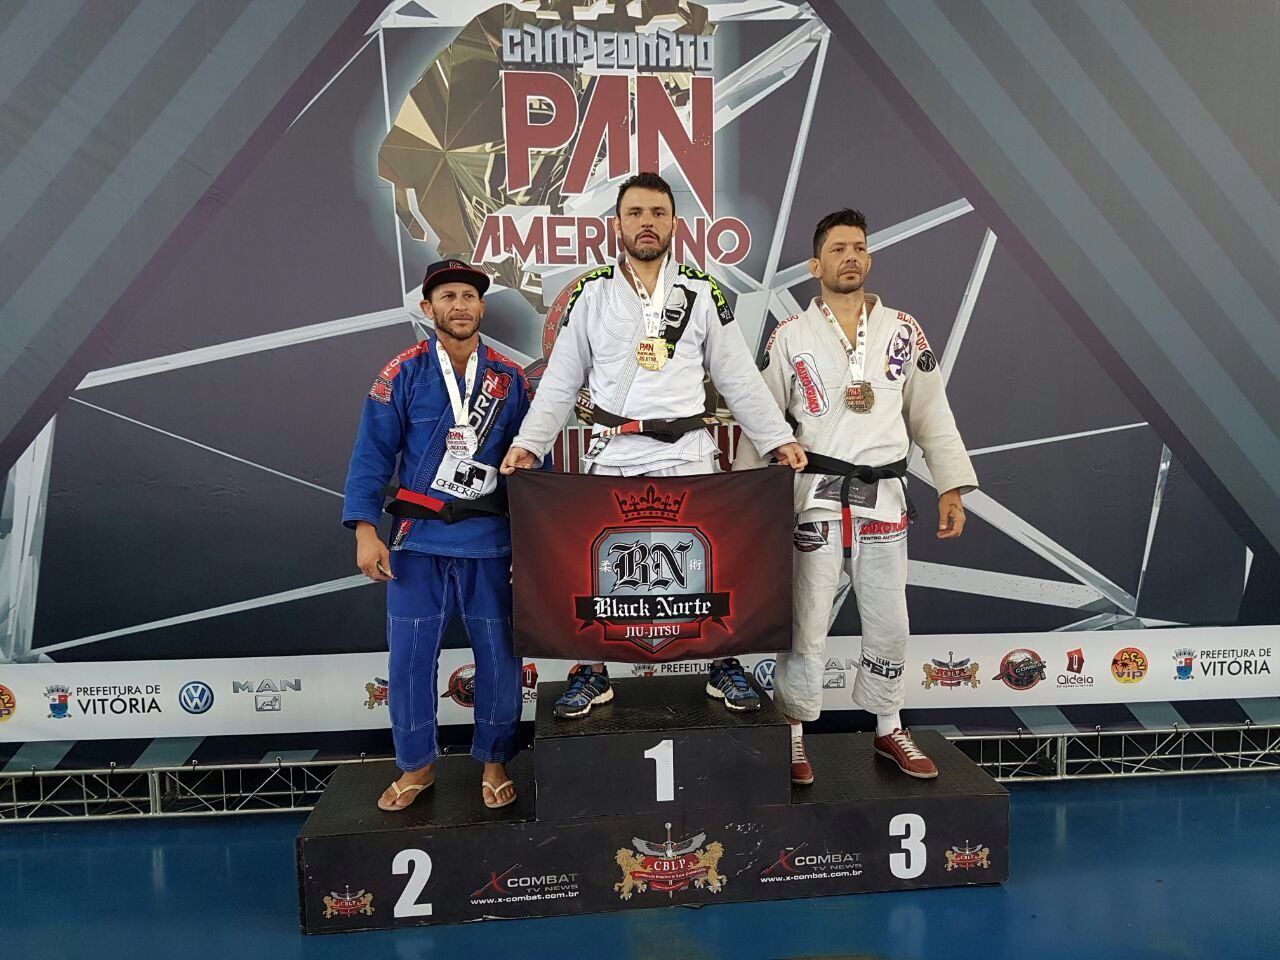 Equipe Black Norte conquista quatro medalhas no Pan-americano de Jiu-jitsu